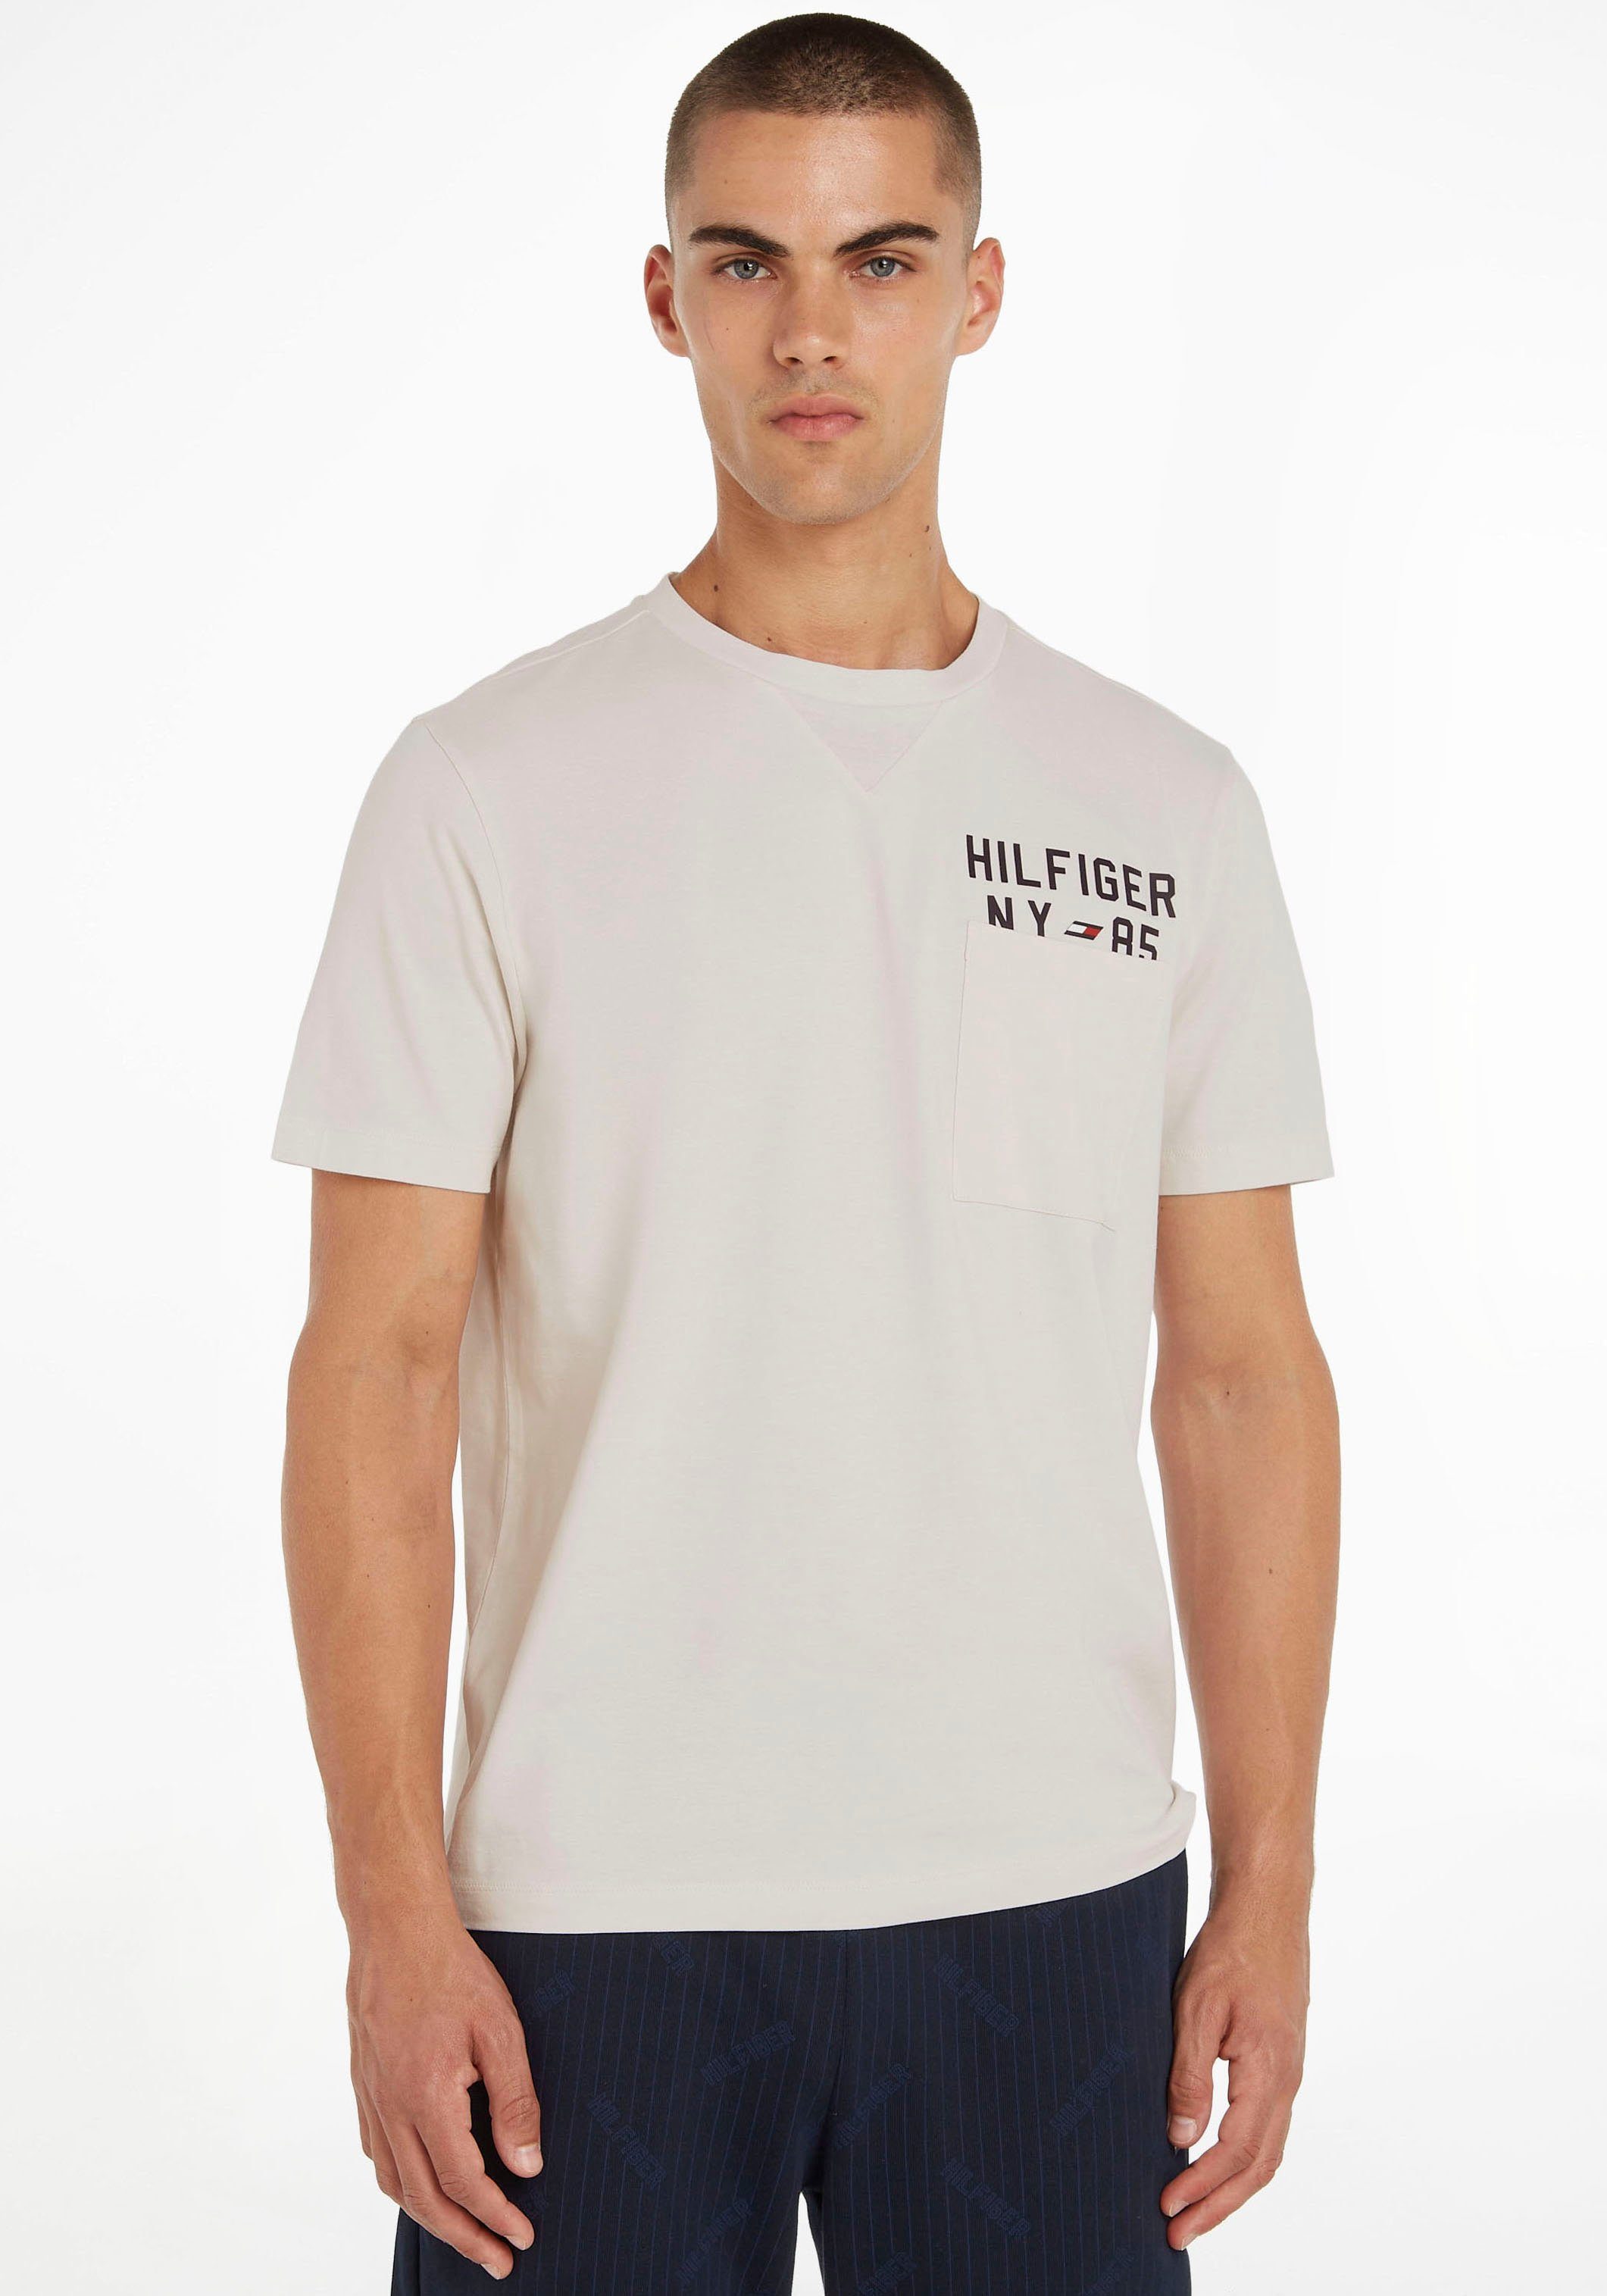 TEE Logoschriftzug Hilfiger Weathered GRAPHIC der Tommy T-Shirt Sport Tommy White Hilfiger mit S/S Brusttasche über